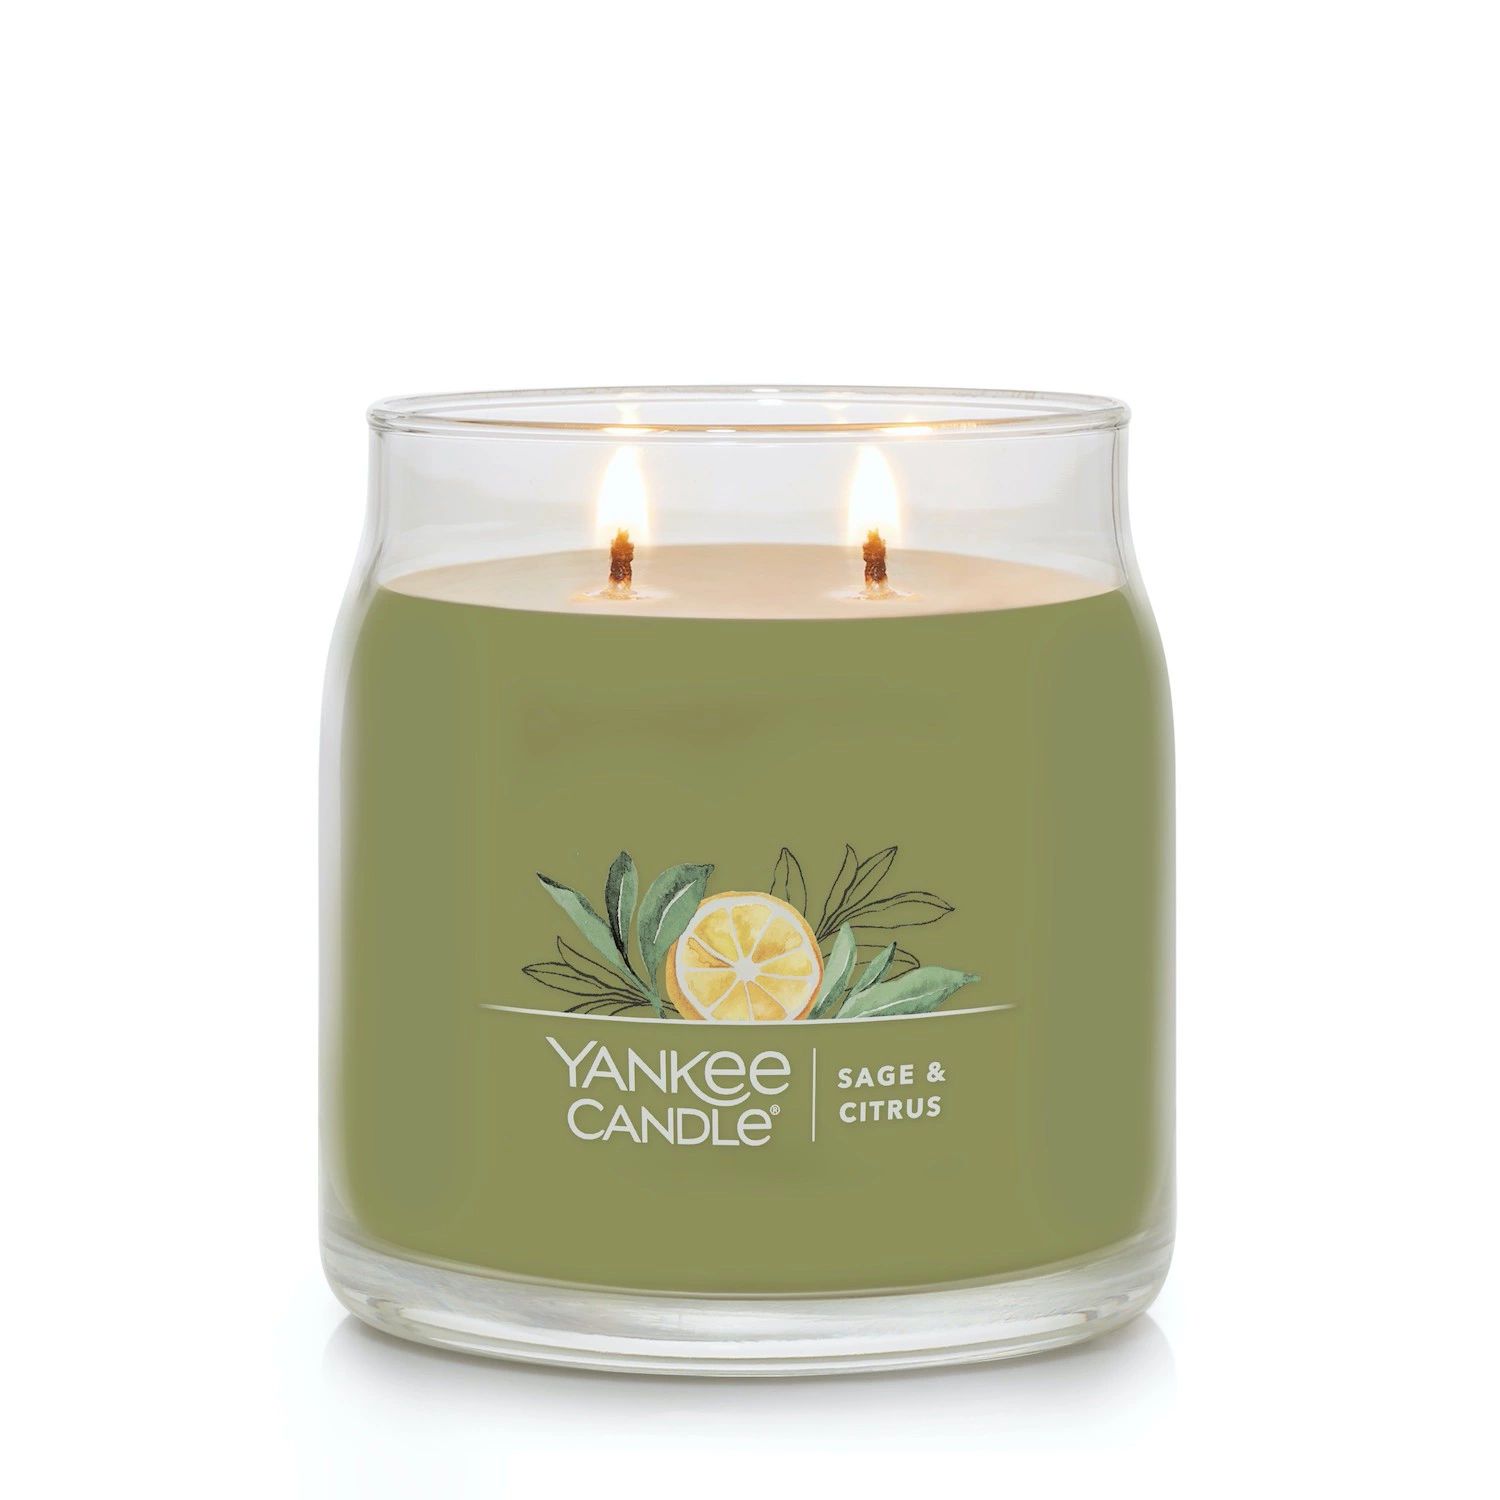 Yankee Candle Sage & Citrus, 13 унций. Фирменная средняя банка для свечей rakle candle citrus sage